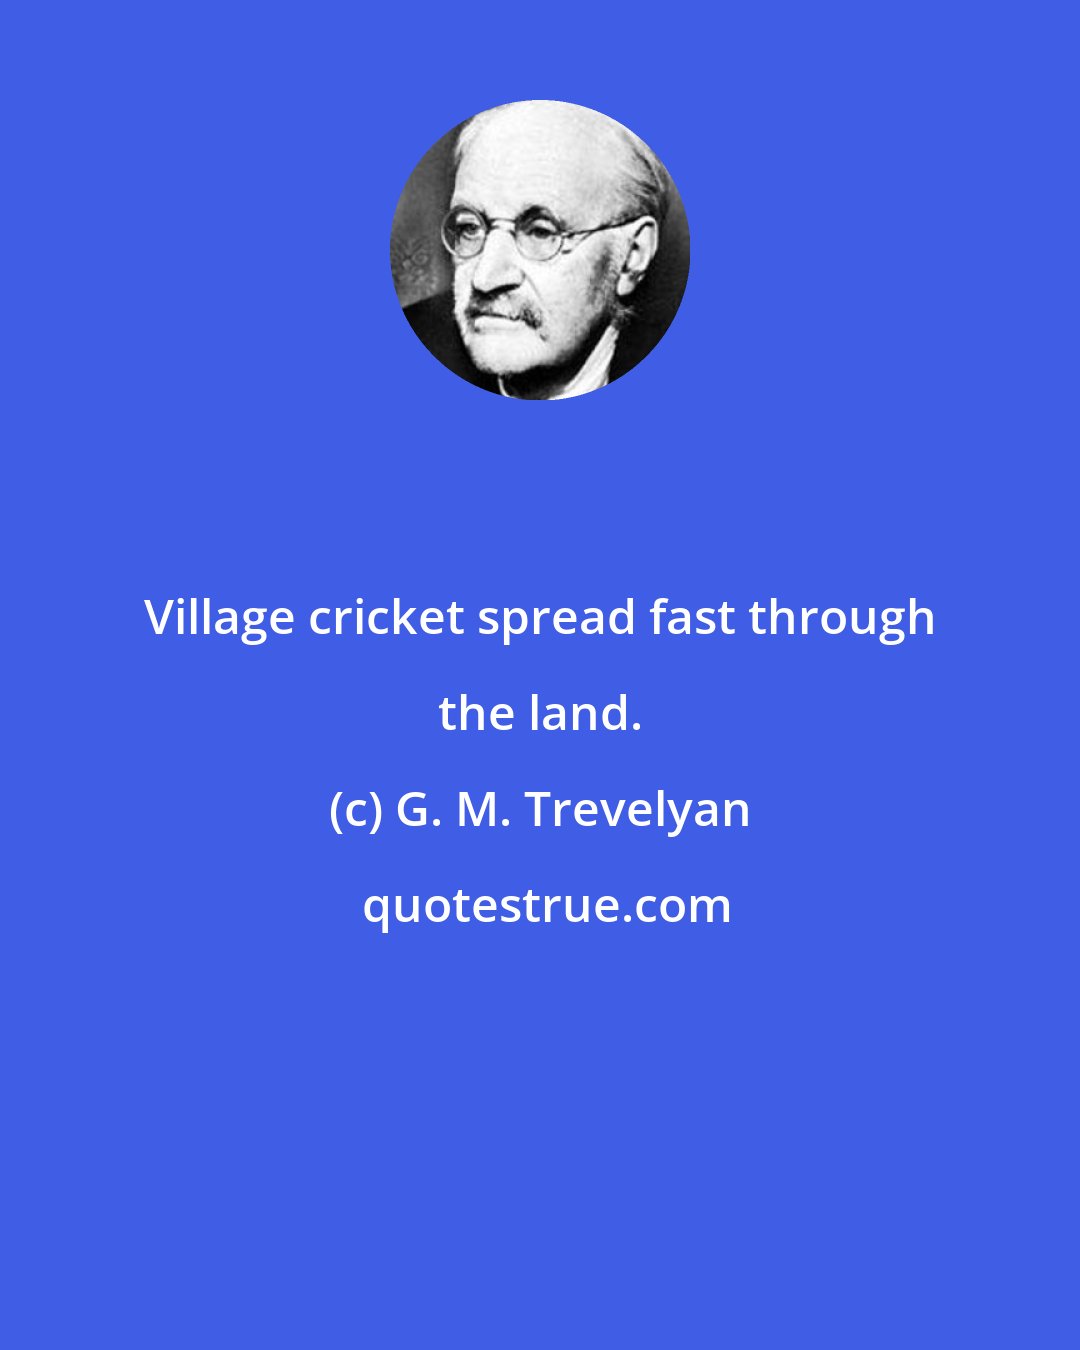 G. M. Trevelyan: Village cricket spread fast through the land.